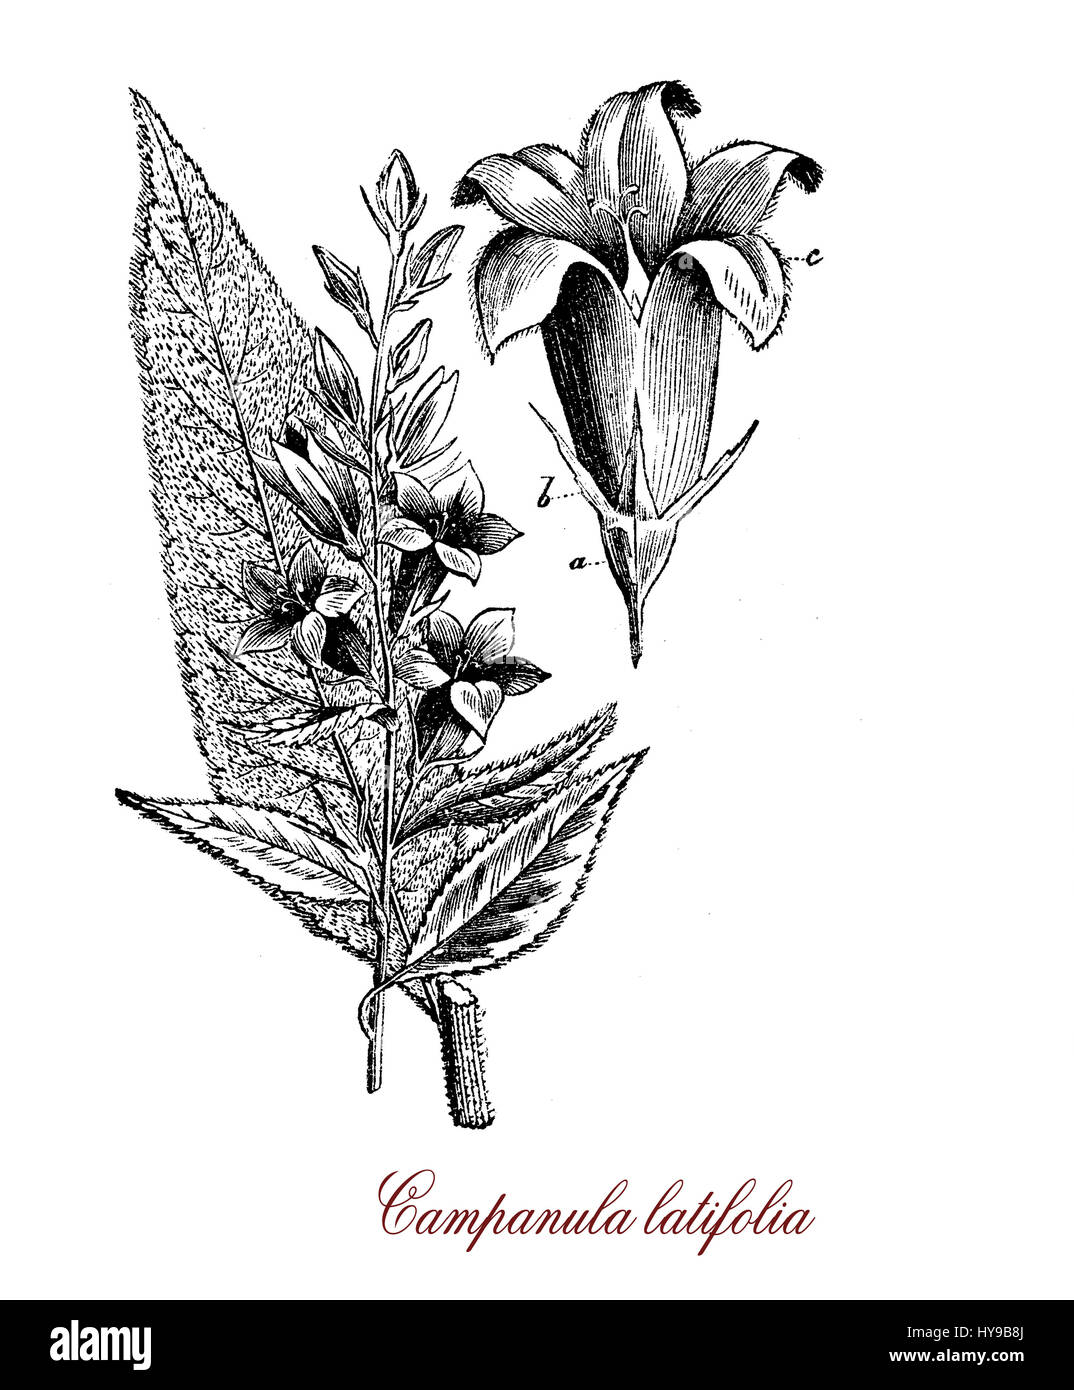 Campanula latifolia vintage de gravure ou giant bellflower,herbacée vivace avec des feuilles ovales lancéolées, bleu foncé en forme de cloche ou de fleurs violettes Banque D'Images